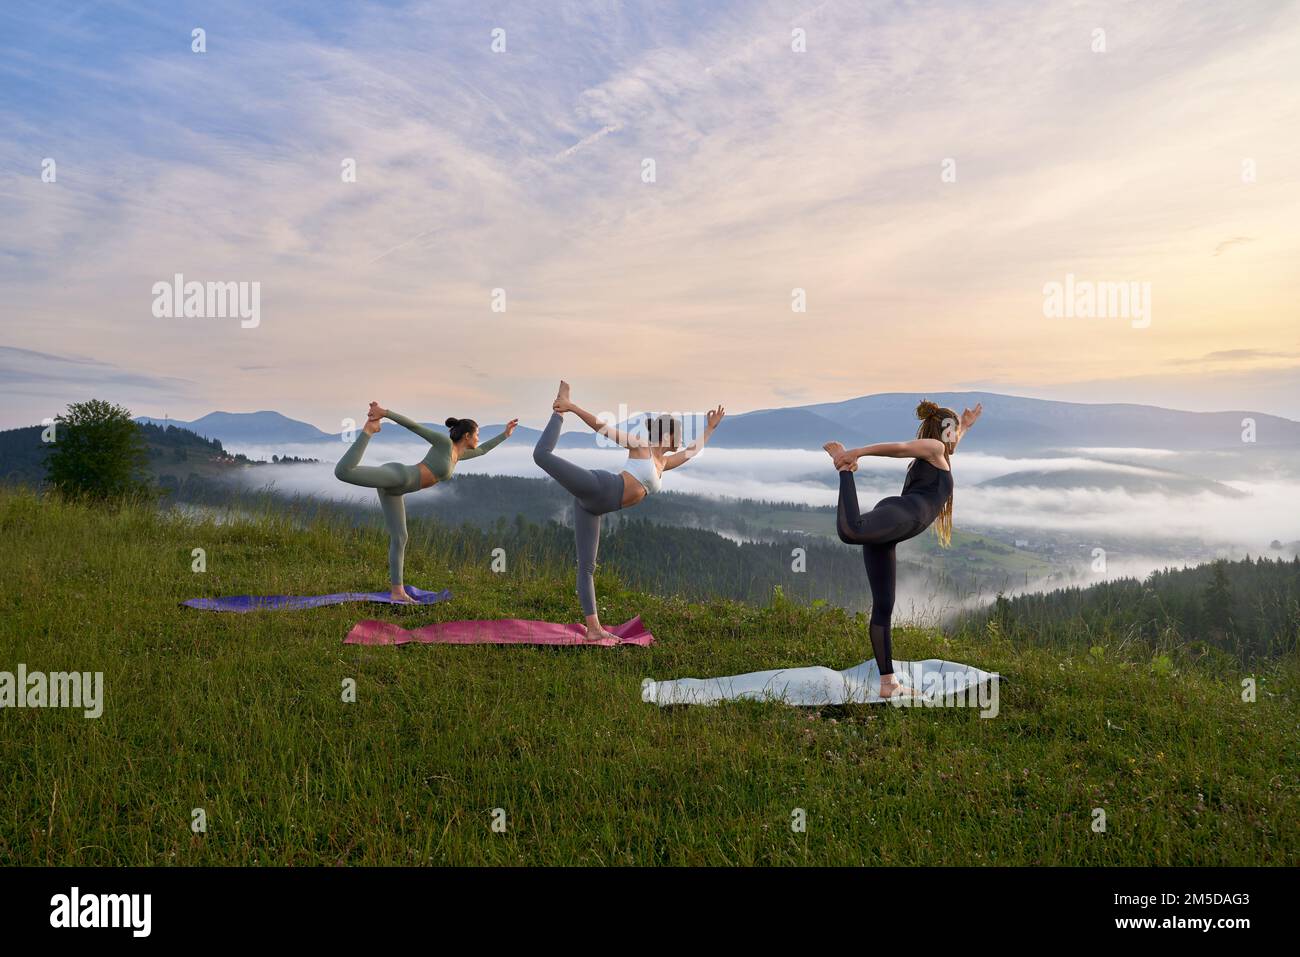 Drei sportliche Frauen, die auf Yoga Mat amonu Sommerberge Sport treiben. Gruppe junger Frauen in Sportkleidung, die gemeinsam im Freien trainieren. Stockfoto